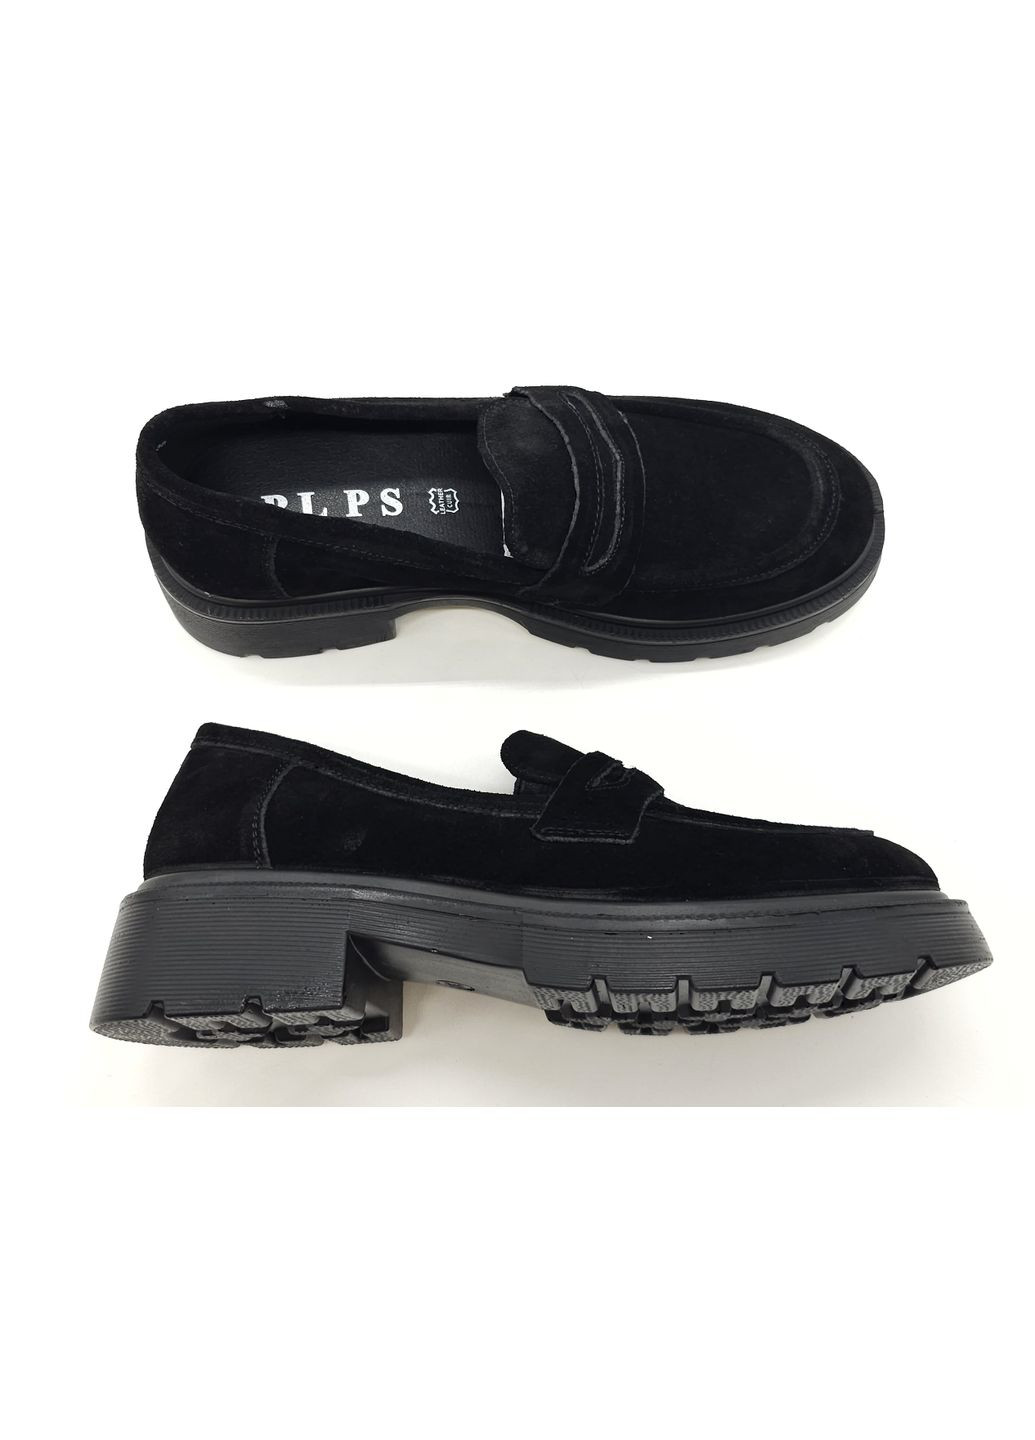 Жіночі туфлі чорні замшеві PP-19-10 24 см (р) PL PS (260379982)